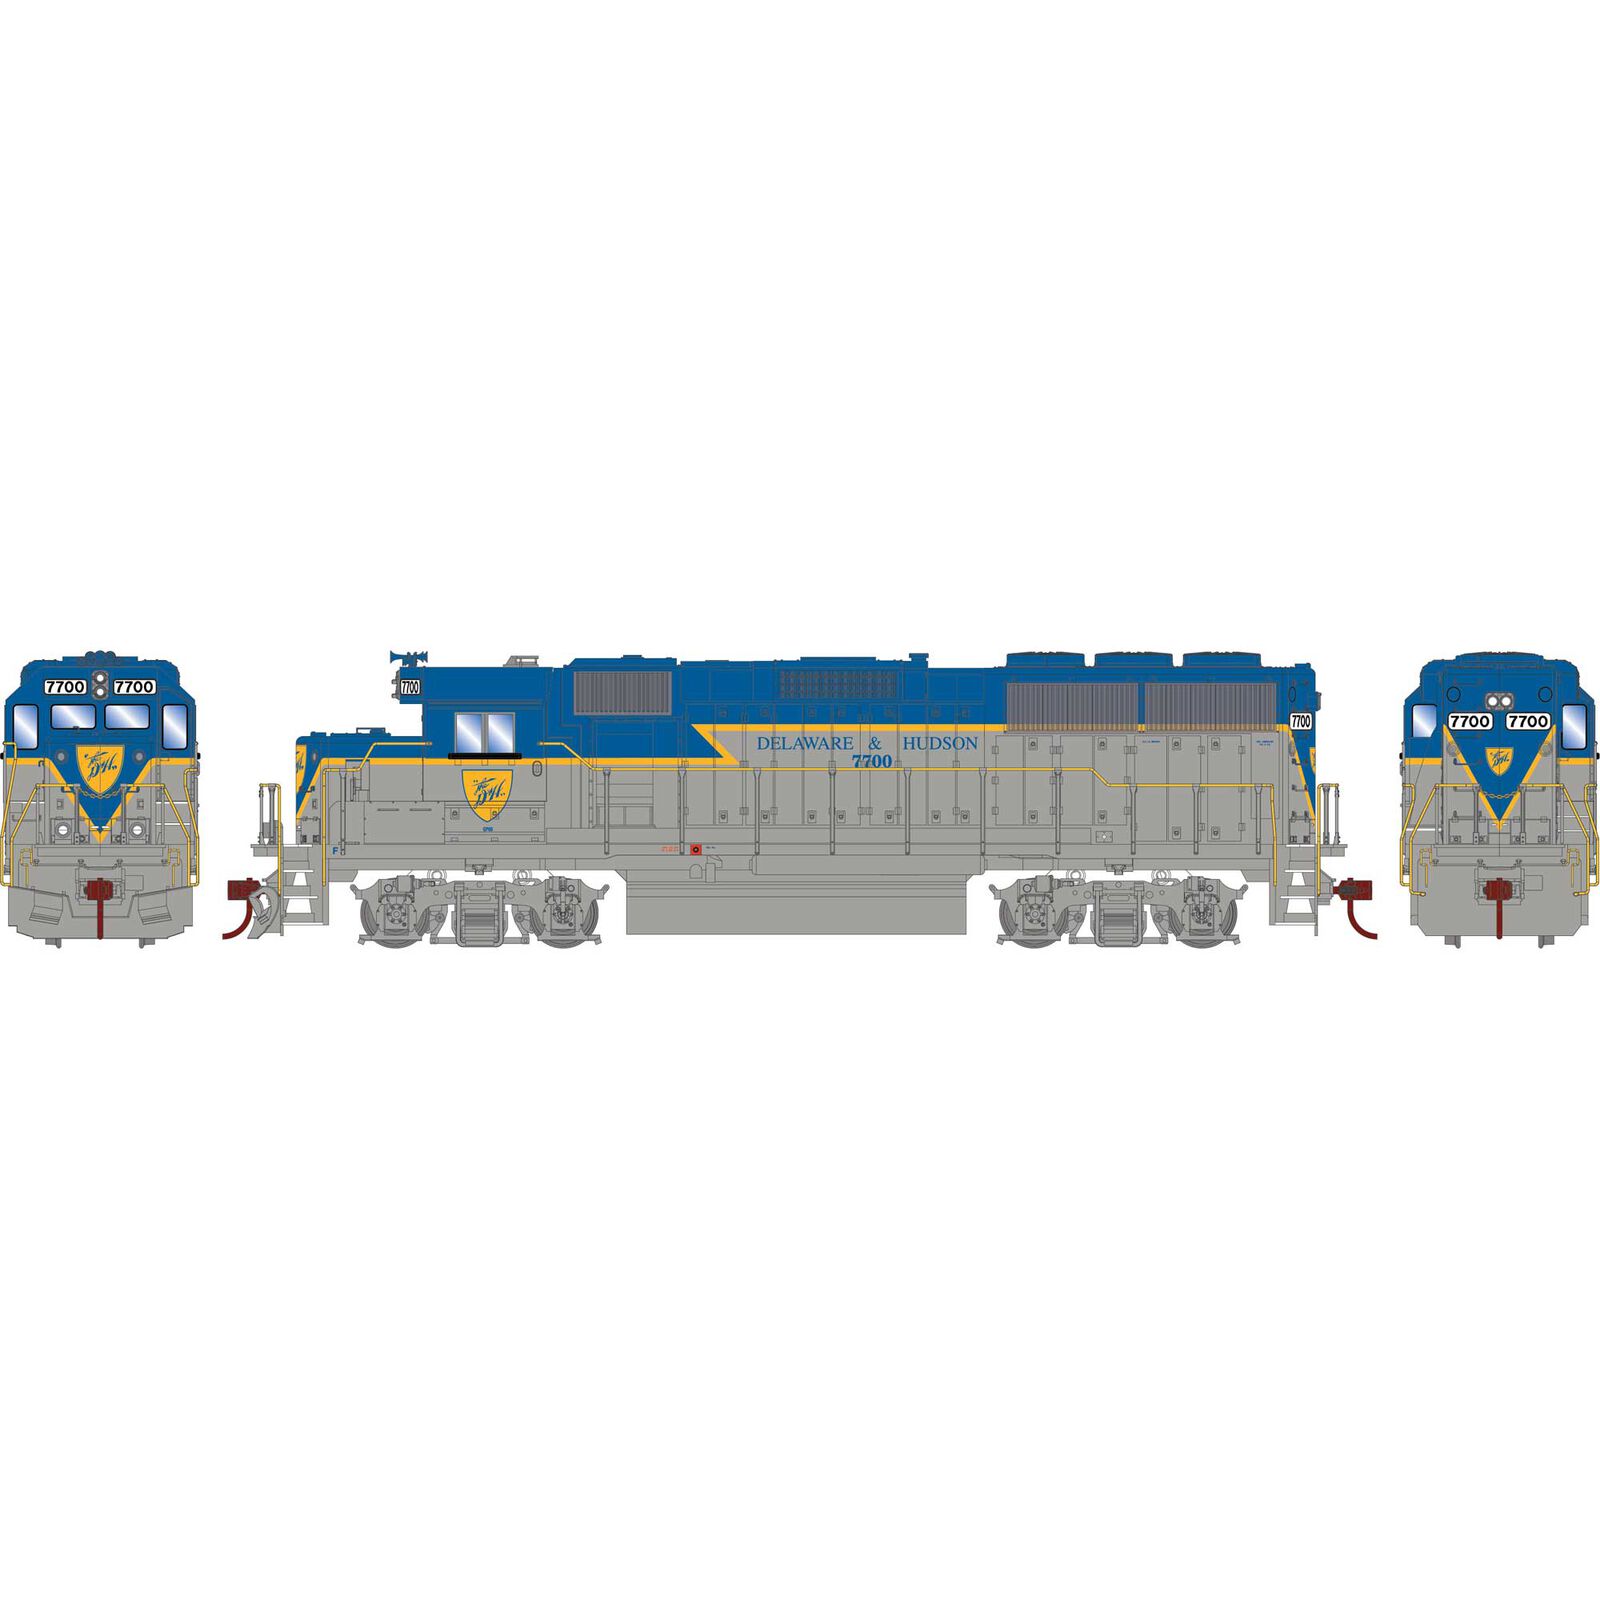 HO EMD GP60 Locomotive, Sound-Ready, Legendary Liveries, DH #7700